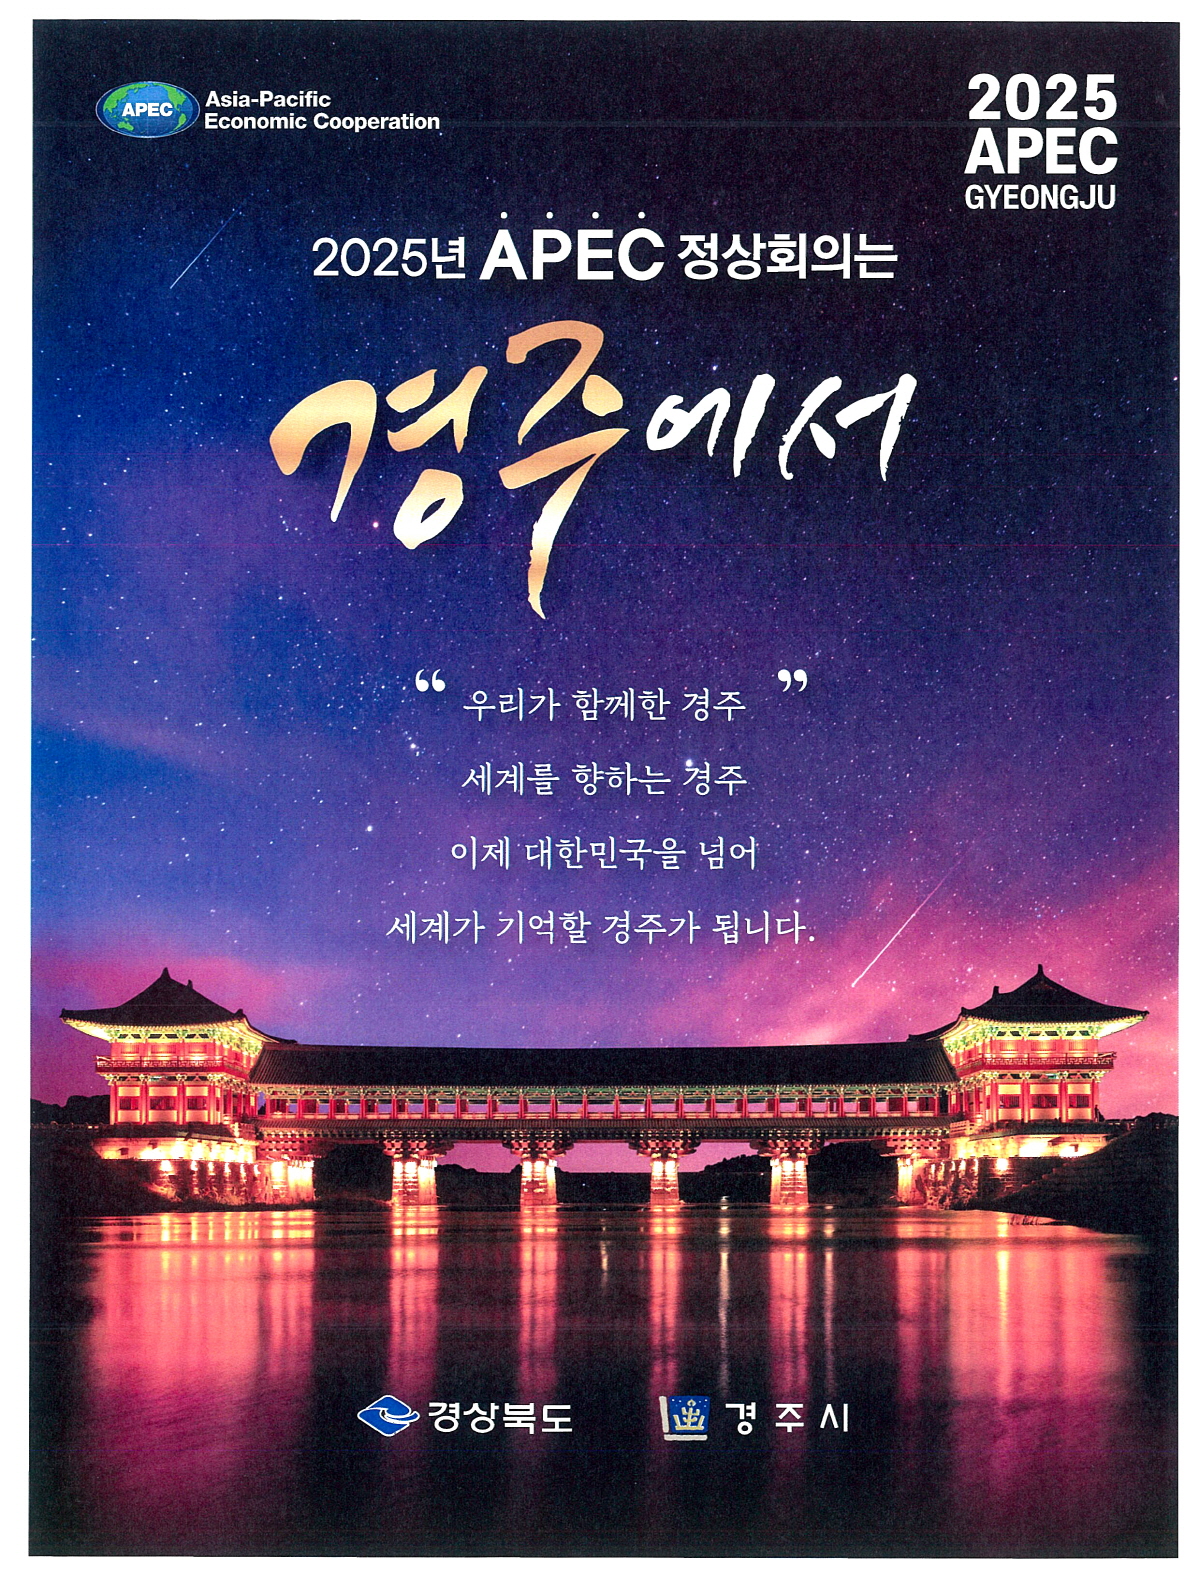 2025 APEC 정상회의는 반드시 경주, 문명 보다 문화를 보여야